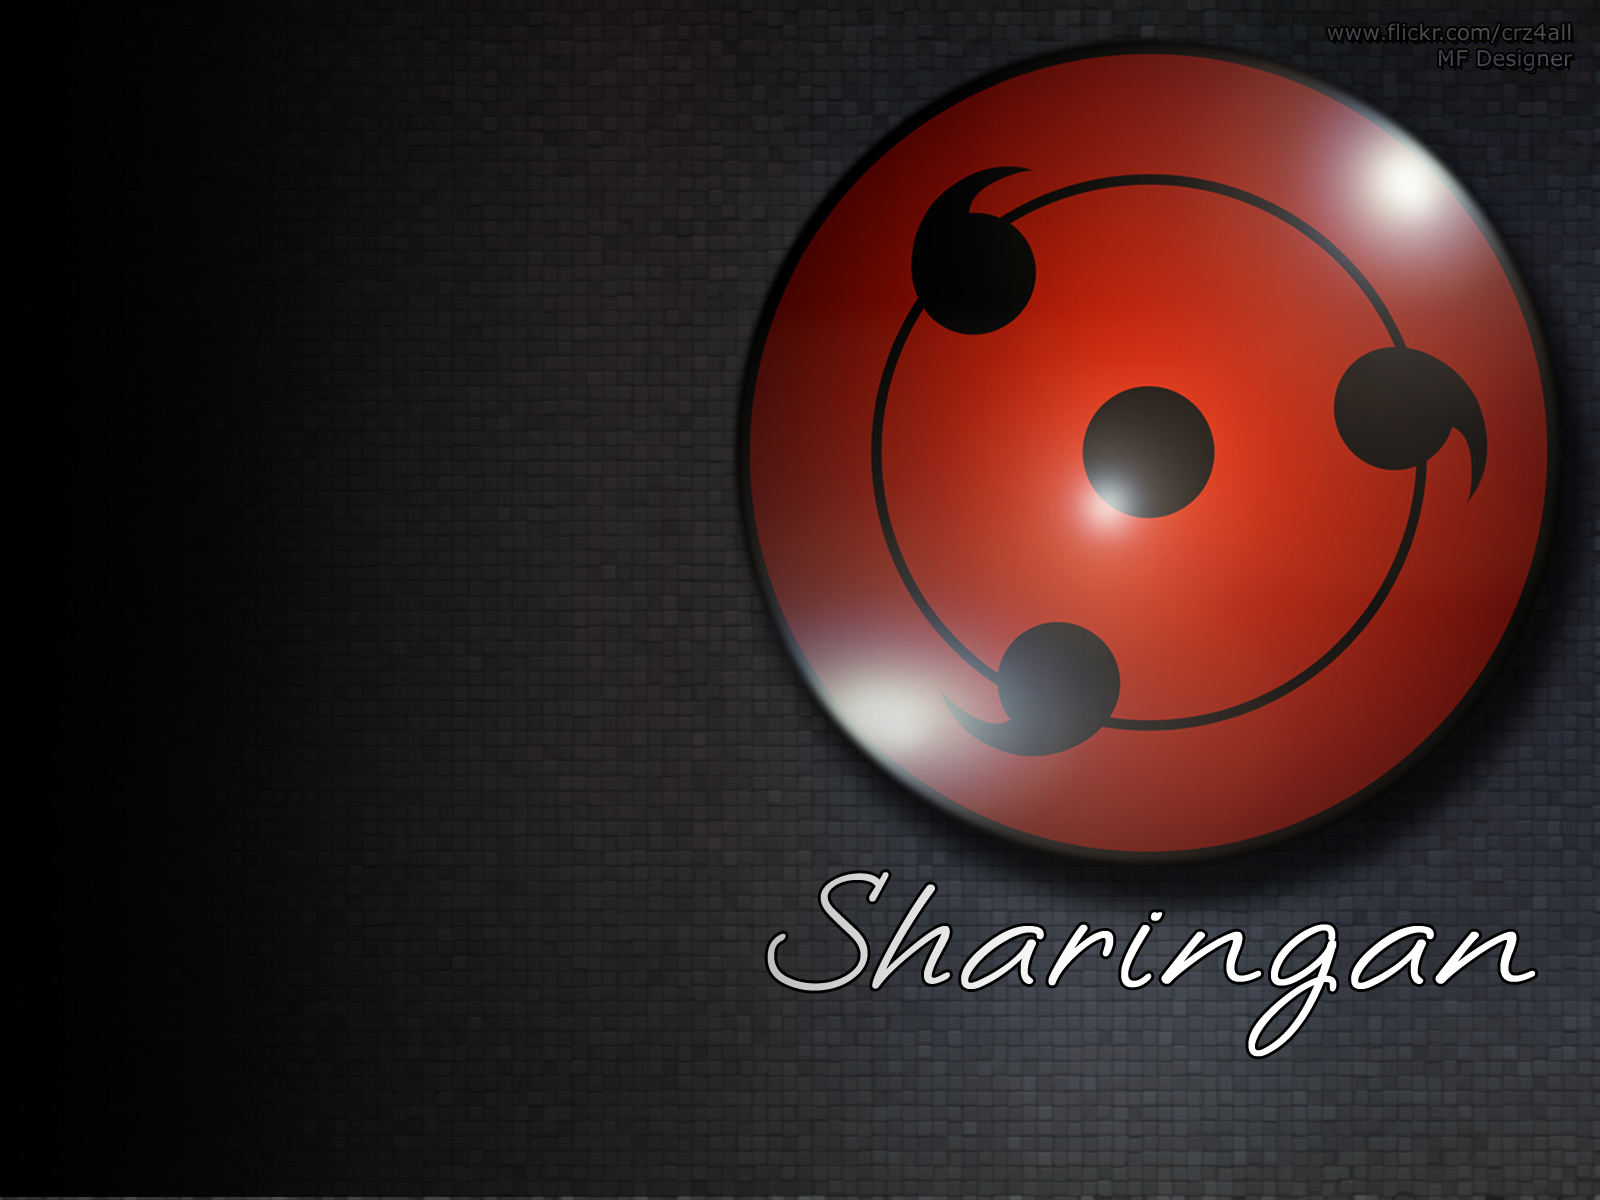  Sharingan (Naruto) HQ Background Images